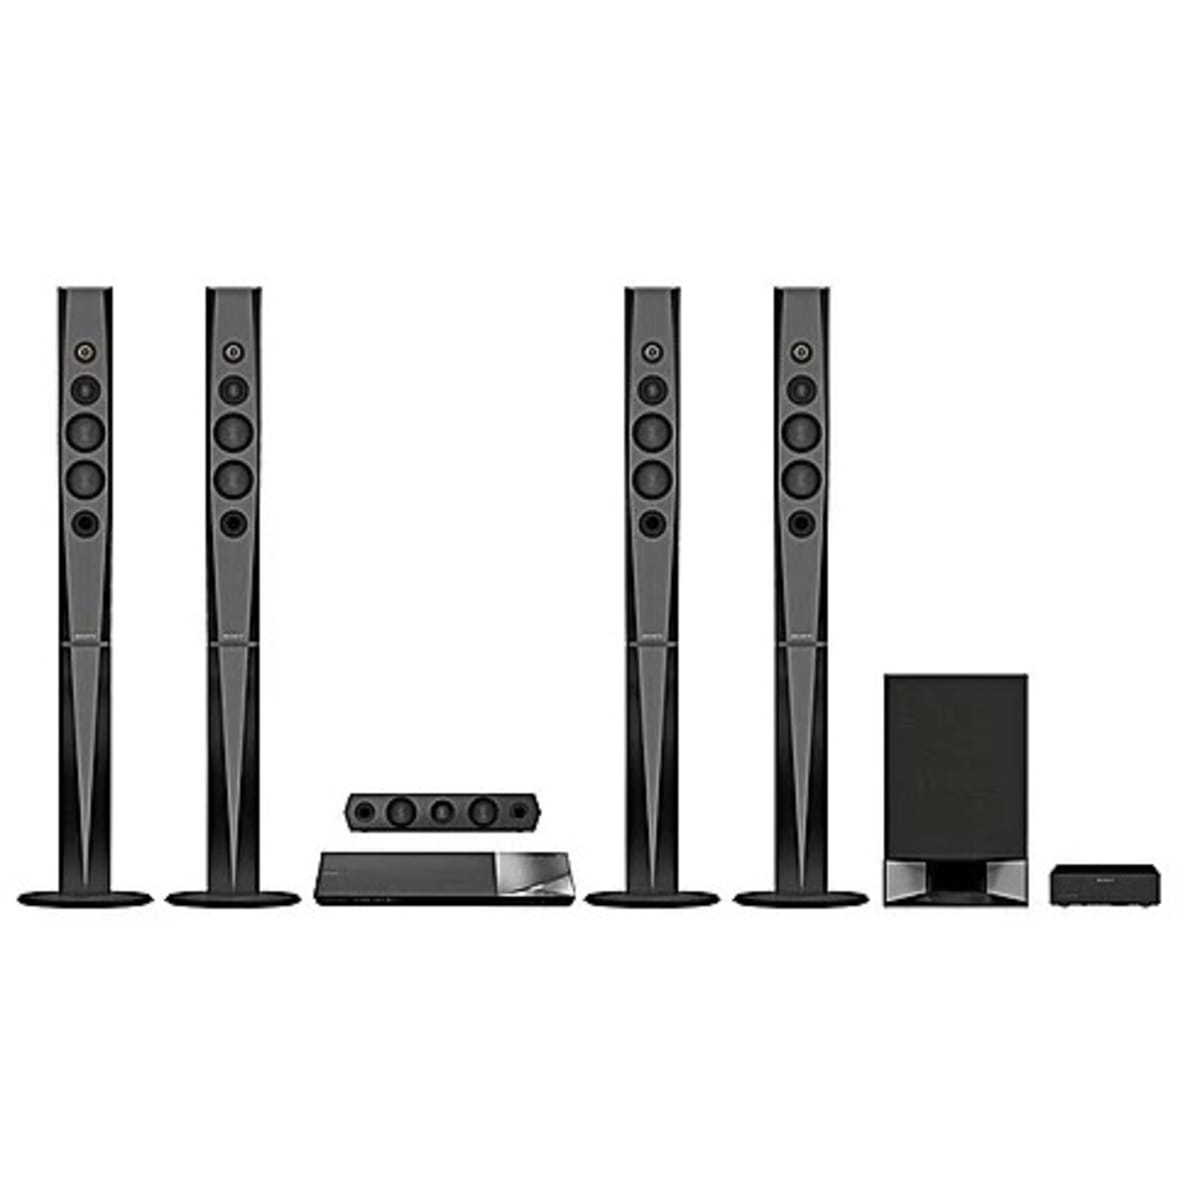 Sony Bdv-n9200w 5.1 Home Audio System Home Cinema Blu-ray- Black